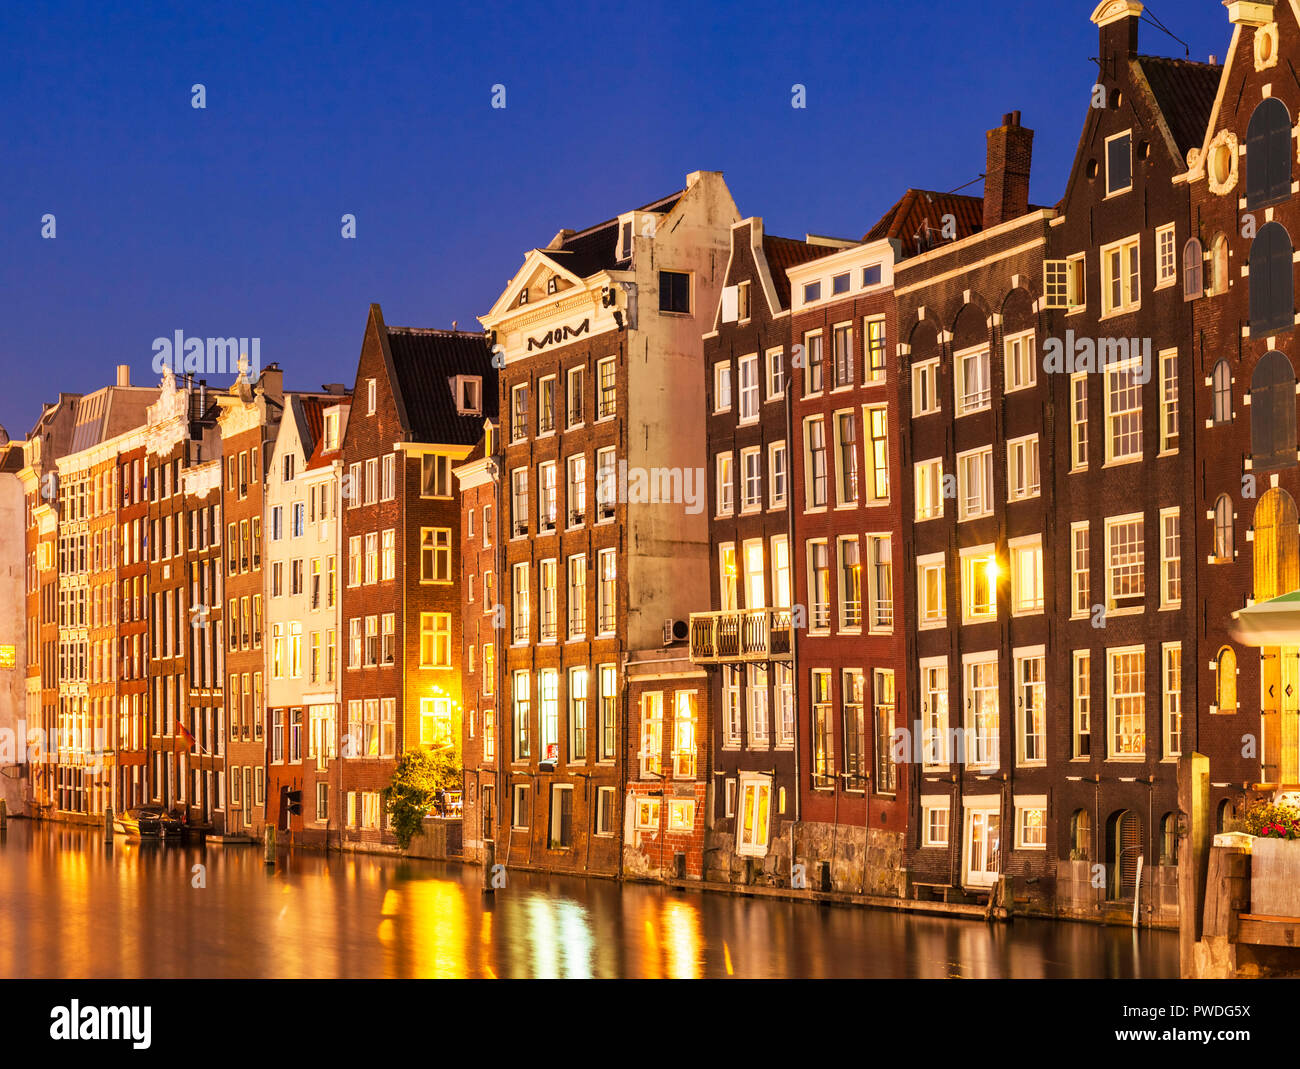 Ámsterdam alberga en Damrak, iluminado en la noche iluminada casas con arquitectura holandesa por el canal de Amsterdam Holanda Holanda UE Europa Foto de stock